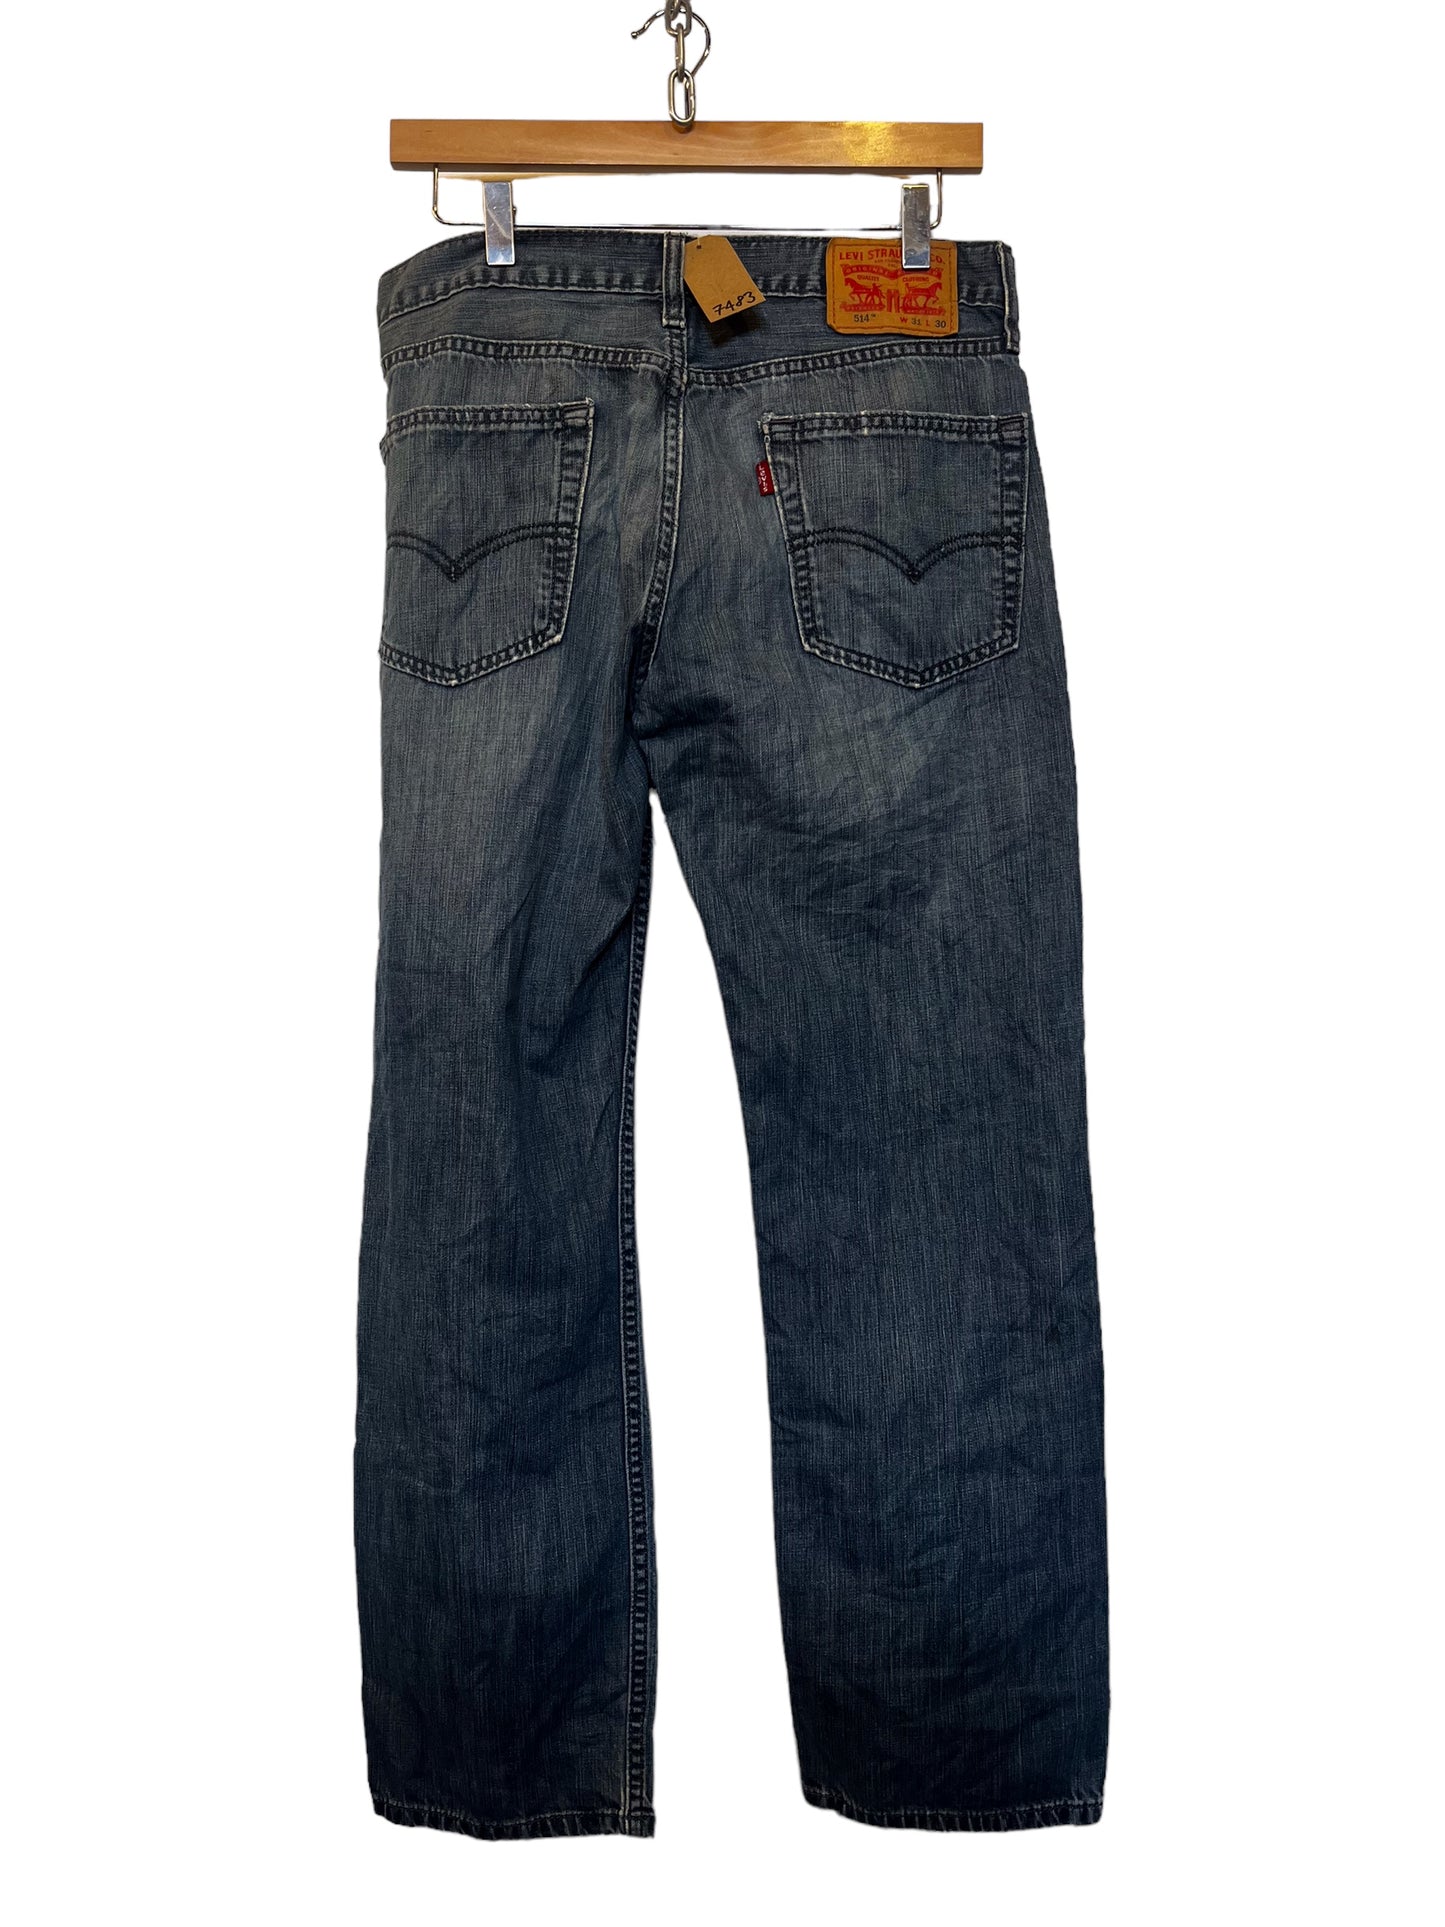 Levi 514 jeans (31x30)